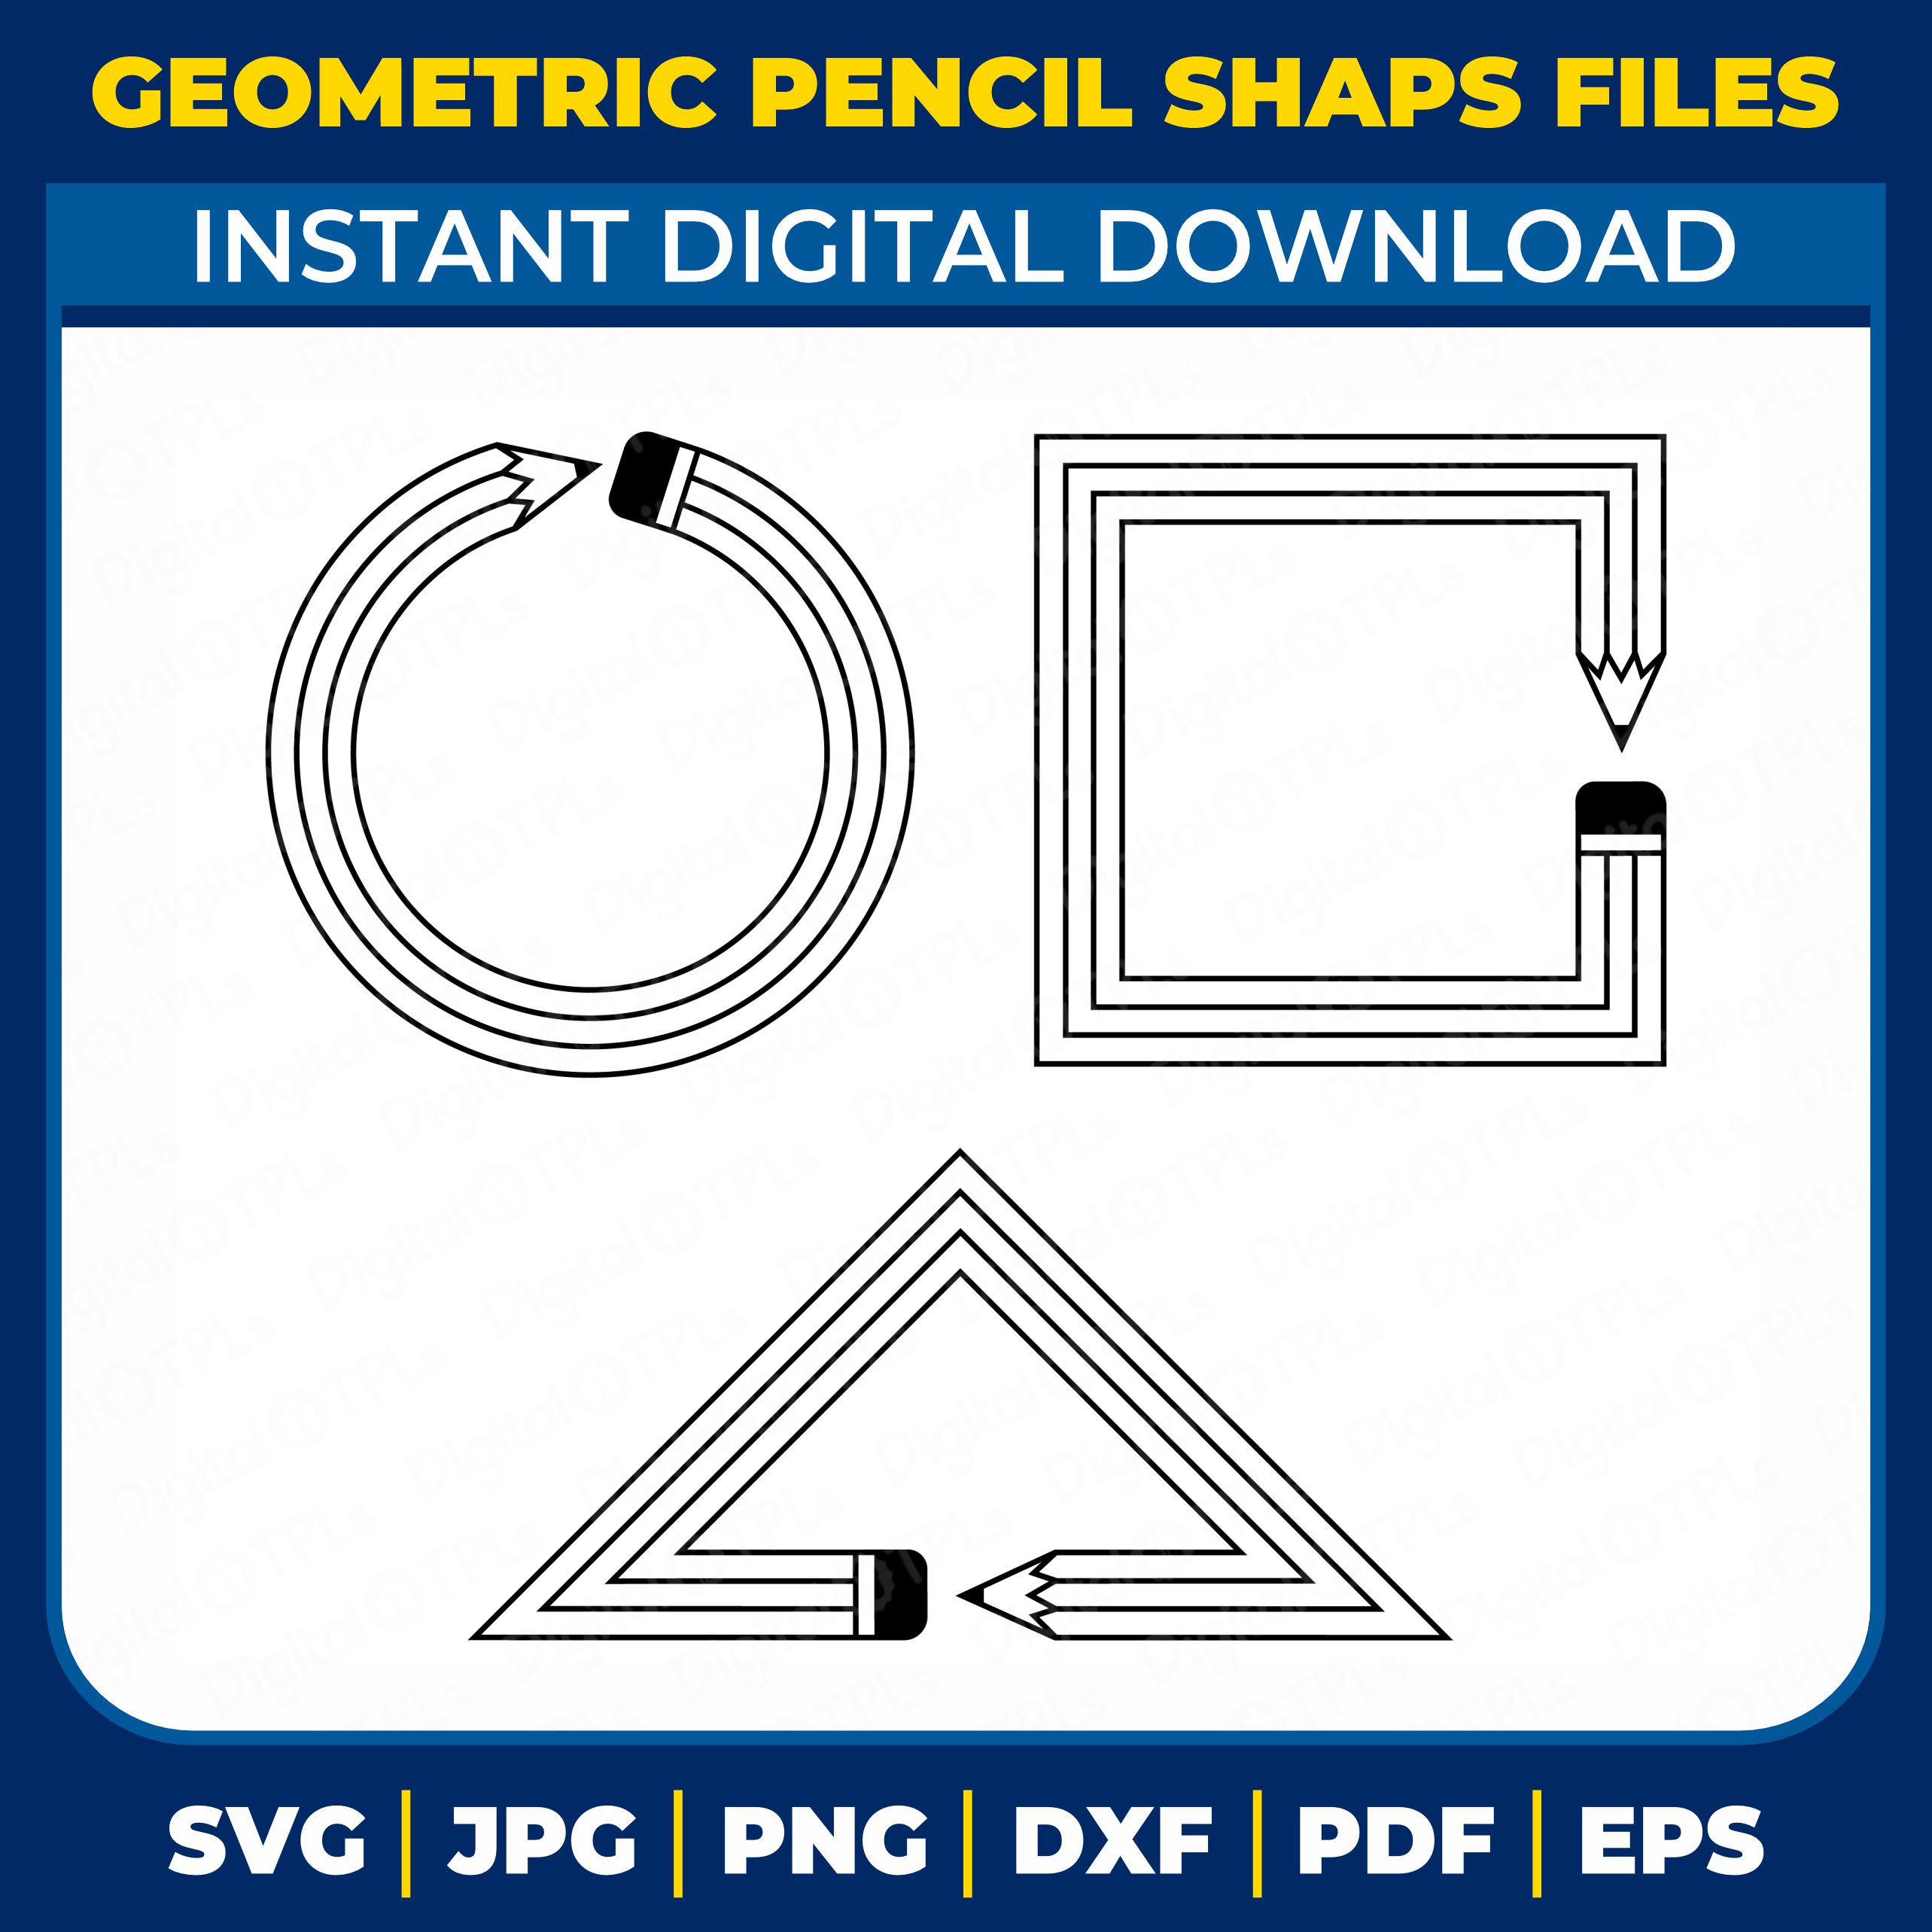 Geometric Pencil Shape SVG Bundle Files cover image.